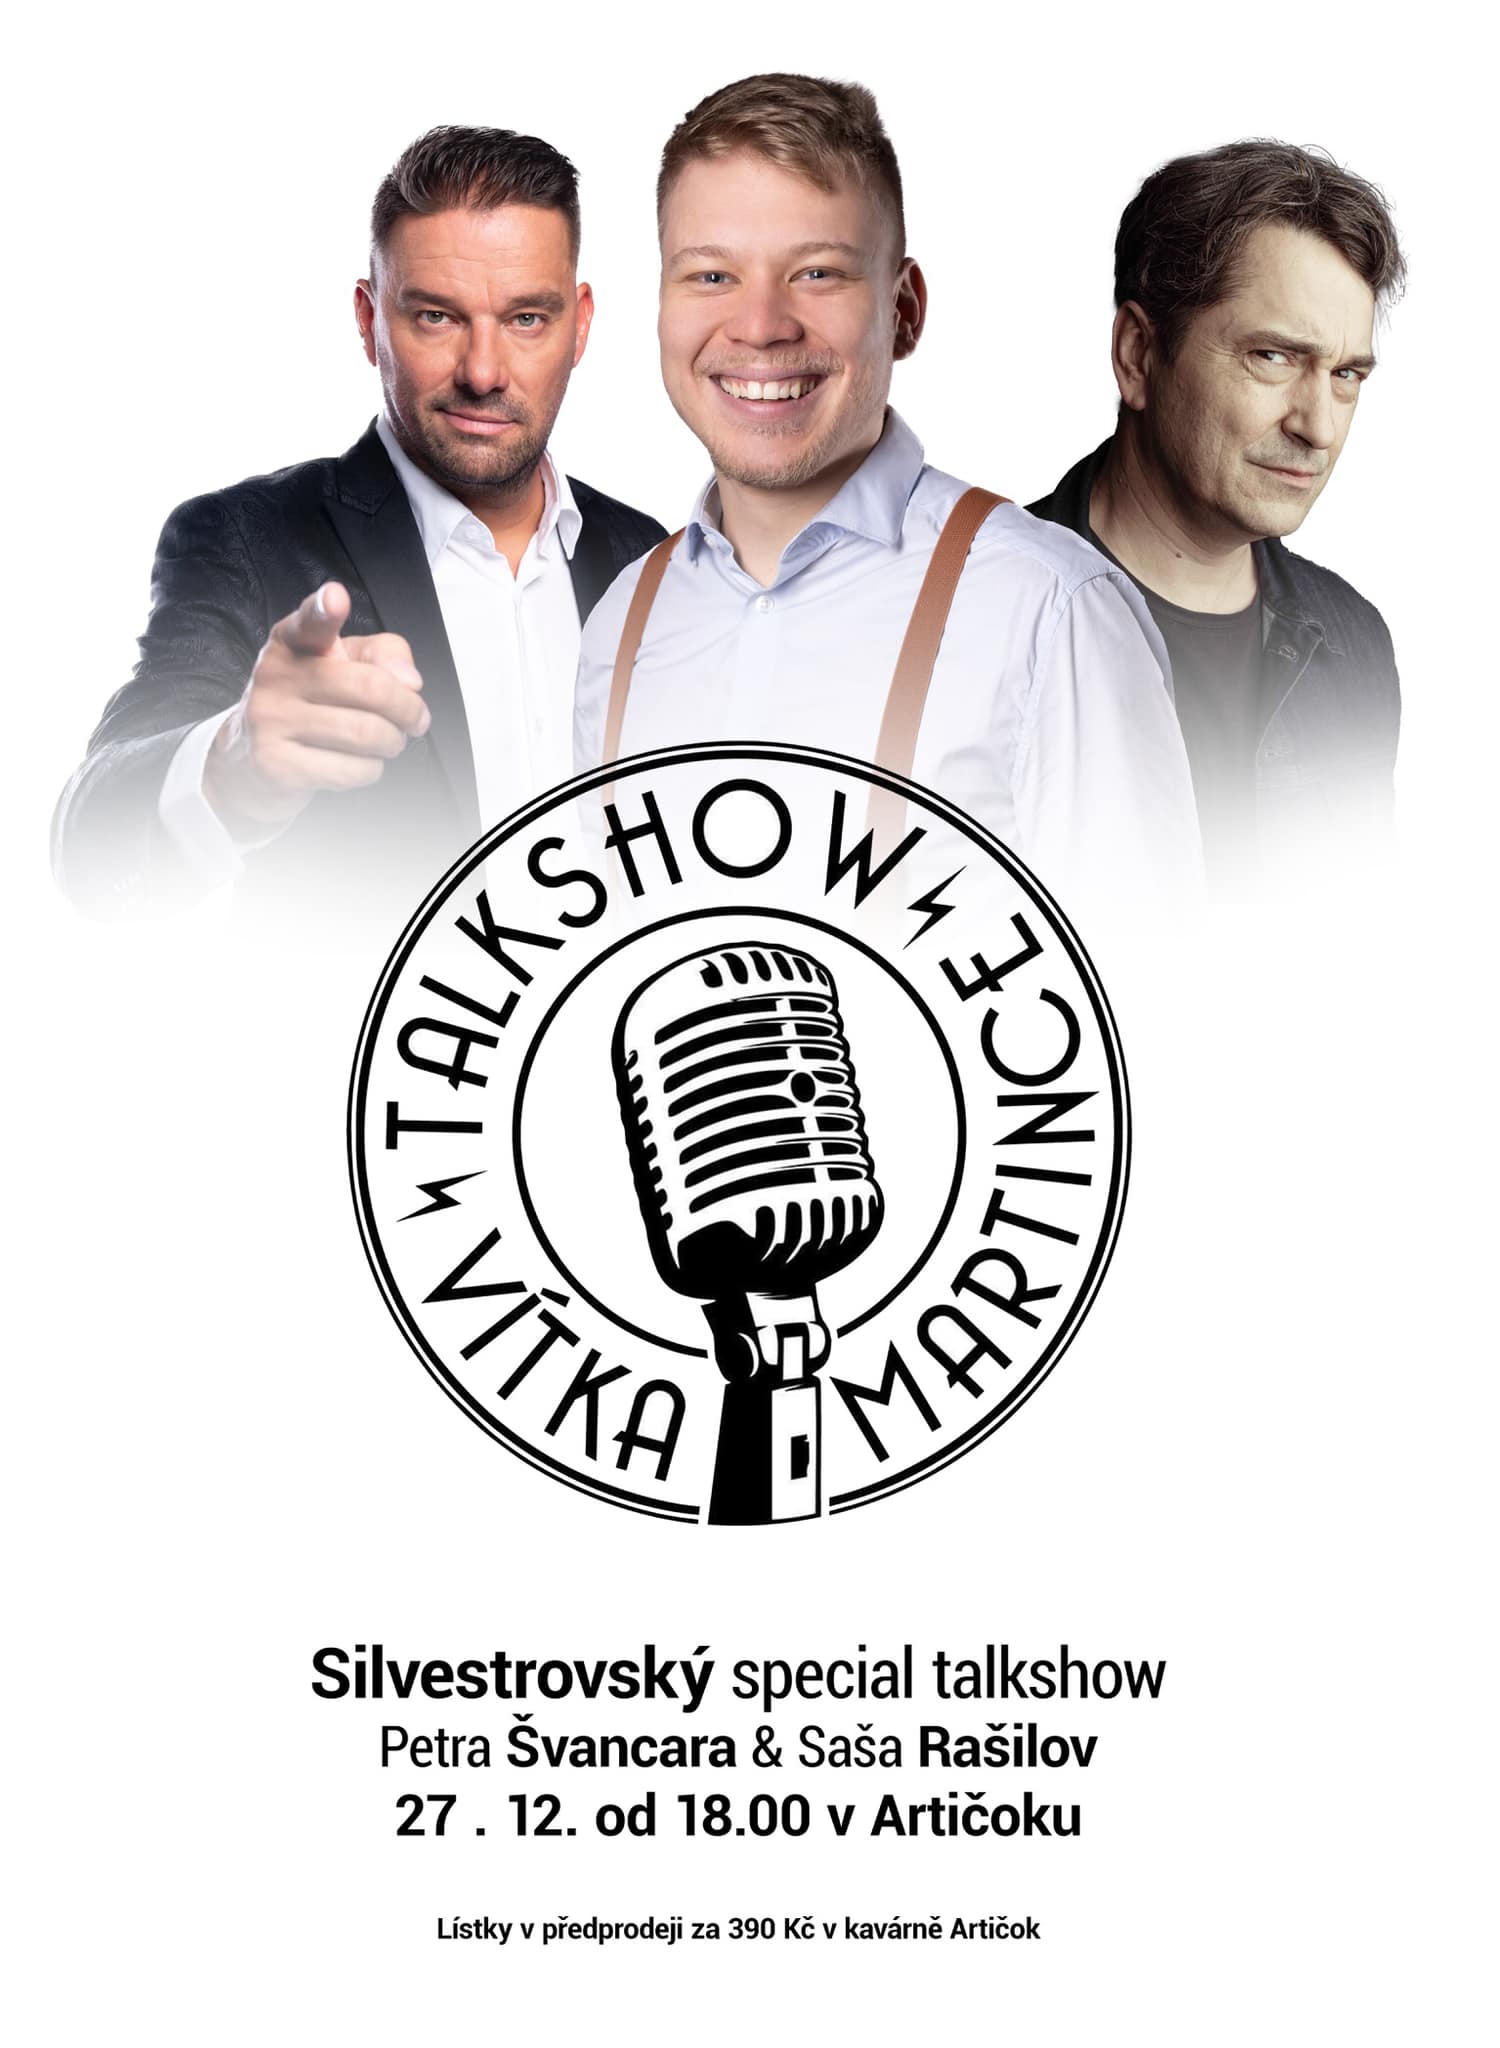 Vítek Martinec - Silvestrovská specialní talk show